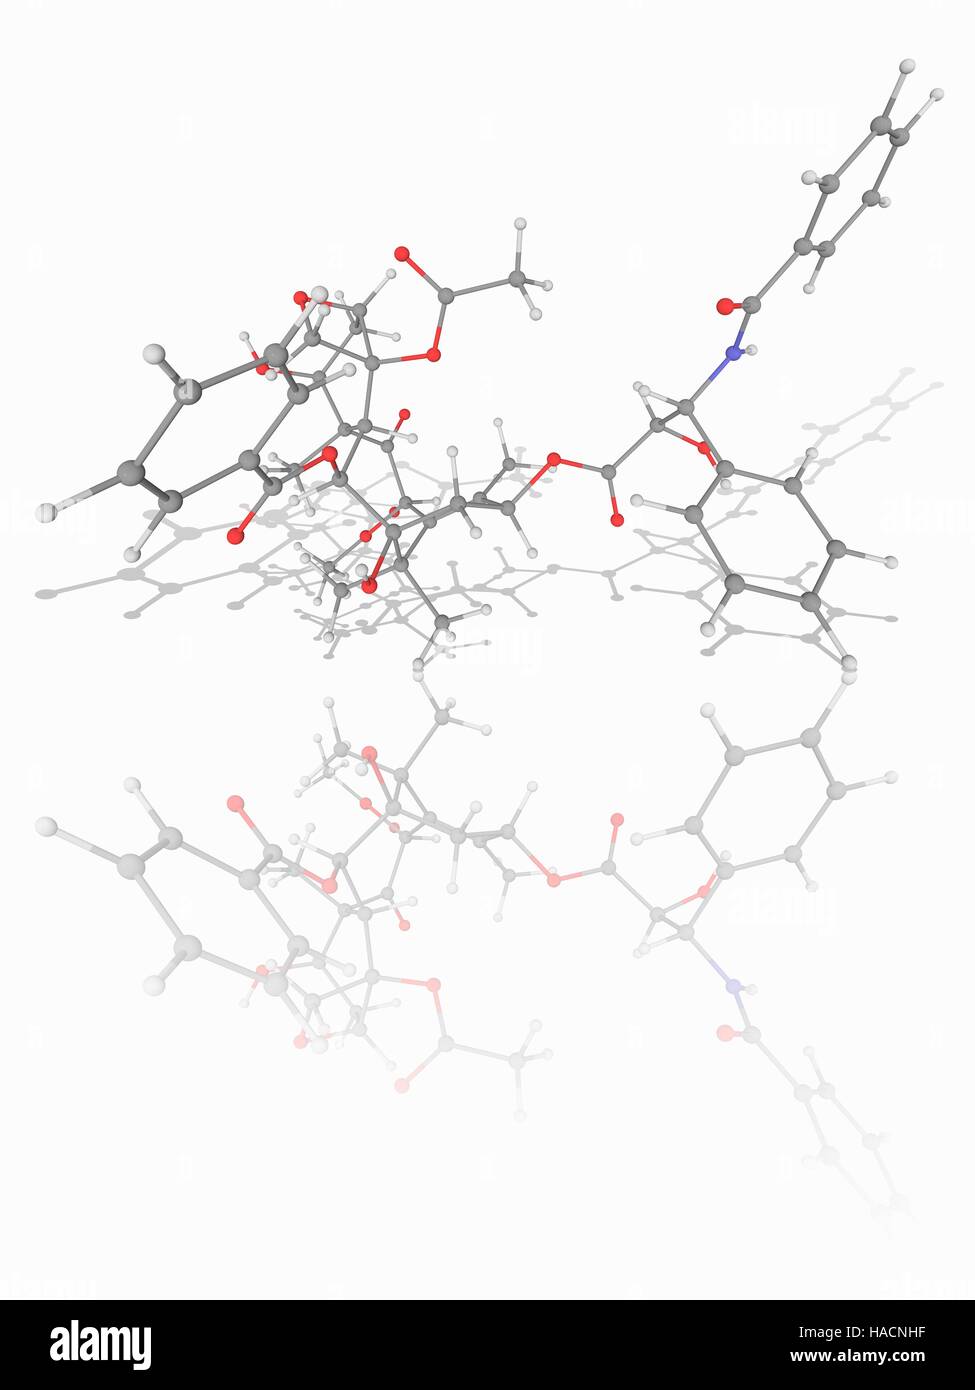 Paclitaxel. Molekülmodell von der Droge Paclitaxel (C47. H51. N.O14), eine mitotische Inhibitor, der in der Krebschemotherapie verwendet wird. Atome als Kugeln dargestellt werden und sind farblich gekennzeichnet: Kohlenstoff (grau), Wasserstoff (weiß), Stickstoff (blau) und Sauerstoff (rot). Abbildung. Stockfoto